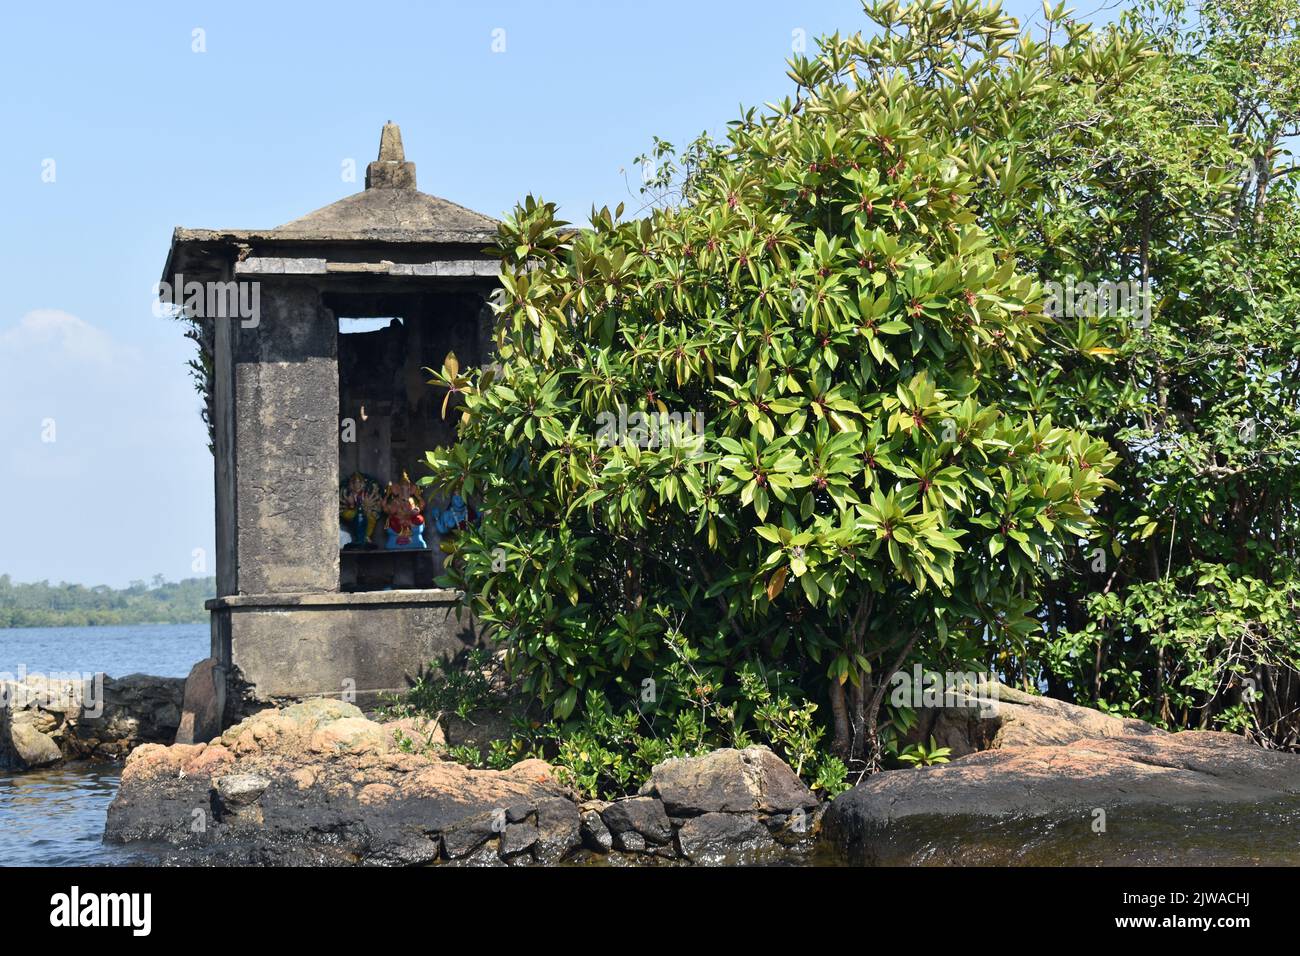 El islote más pequeño del lago Madu Ganga se llama “Satha Paha Doowa”. “Paha” se traduce como “cinco”, mientras que “Satha” significa “centavo”. Según la tradición local, el islote había sido comprado una vez por cinco centavos. Pero otros dicen, él consiguió su nombre debido a la forma o el tamaño pequeño que se asemeja apenas a una moneda pequeña. Sin embargo, FICE-CENT-ISLAND es lo suficientemente grande como para llevar un templo. El santuario está dedicado a Kataragama, una deidad venerada por budistas cingaleses e hindúes tamil y animistas de Weddah por igual. En cierto modo, es un Devale, un santuario budista para una deidad hindú. Sri Lanka. Foto de stock